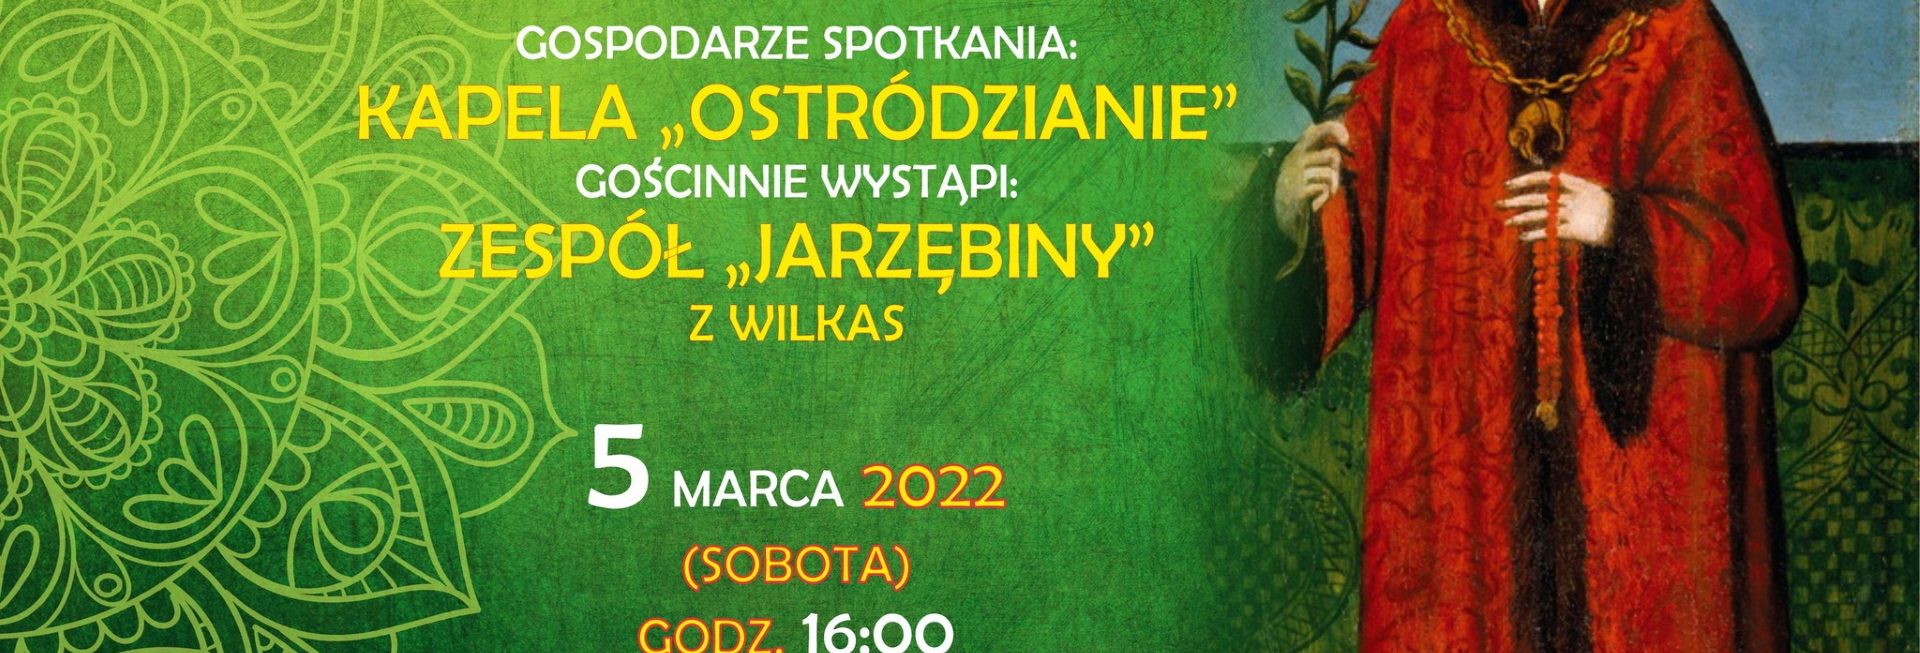 Plakat graficzny zapraszający do Ostródy na wieczór z kulturą kresową "Kazimierz Królewicz" Ostróda 2022.